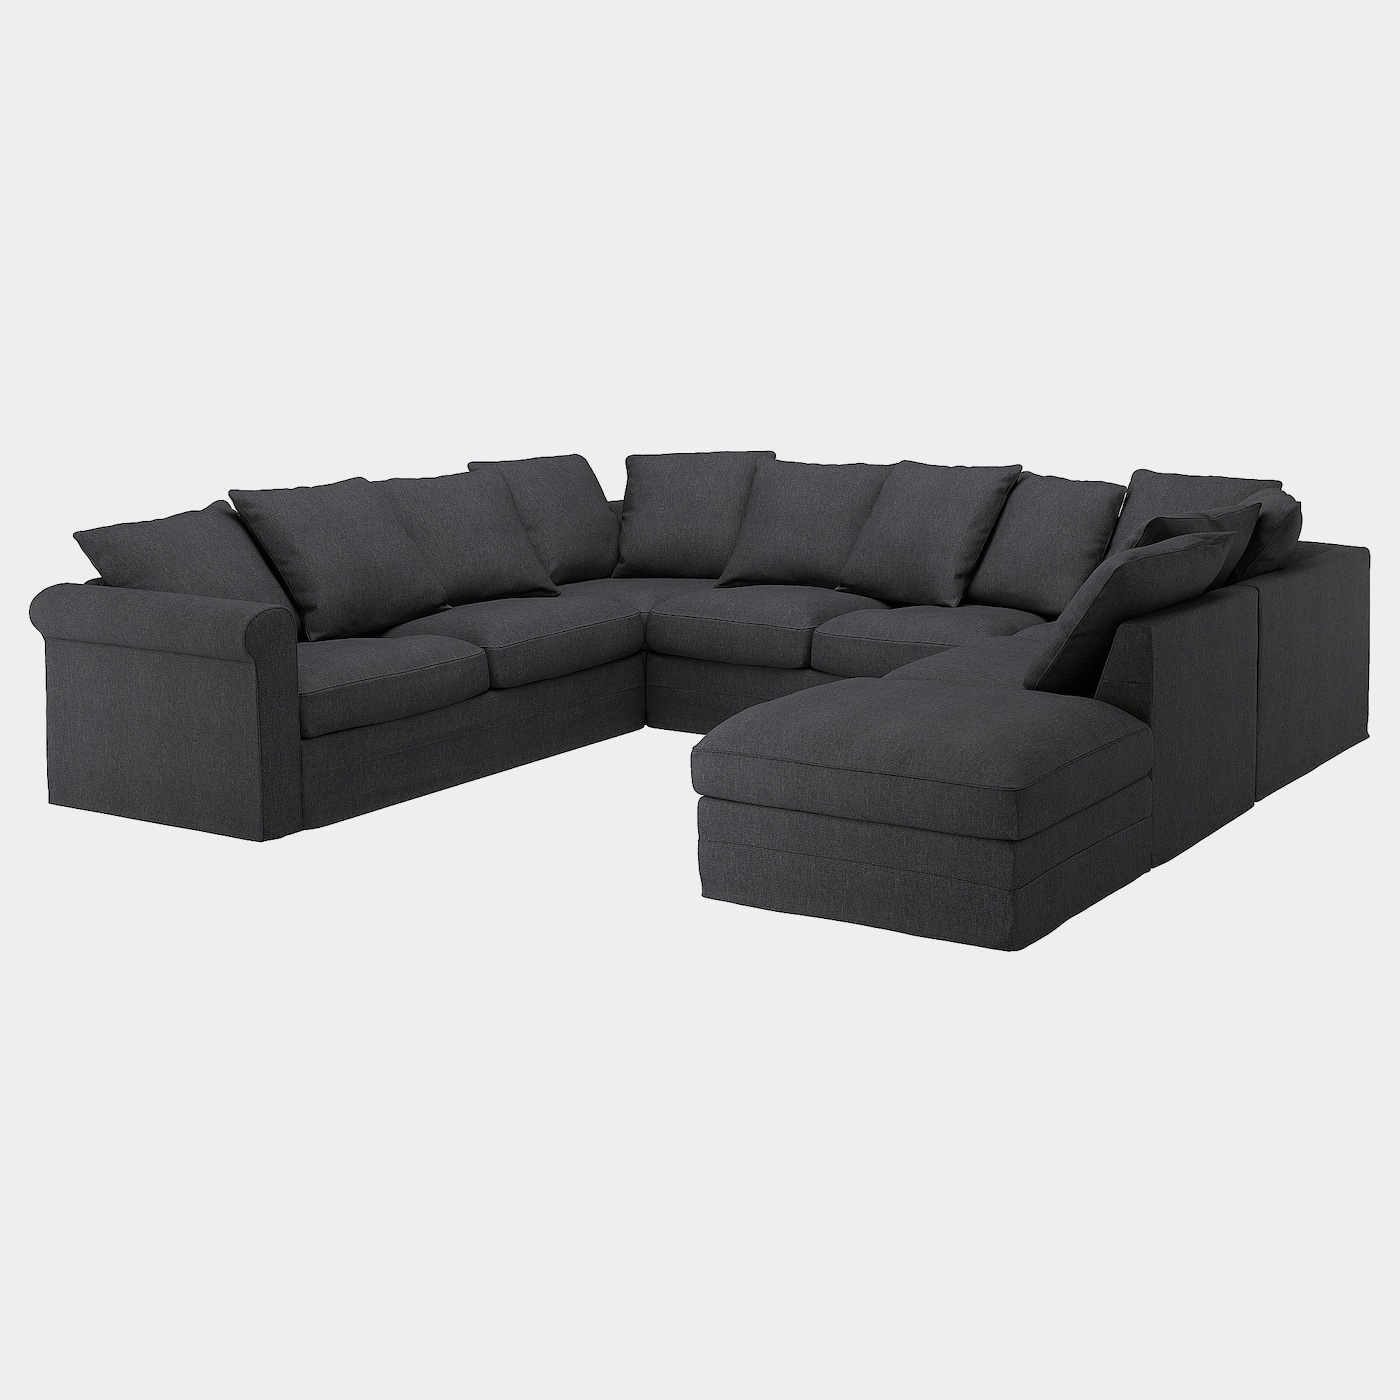 GRÖNLID Bezug 6er-Sofa, U-Form  - extra Bezüge - Möbel Ideen für dein Zuhause von Home Trends. Möbel Trends von Social Media Influencer für dein Skandi Zuhause.